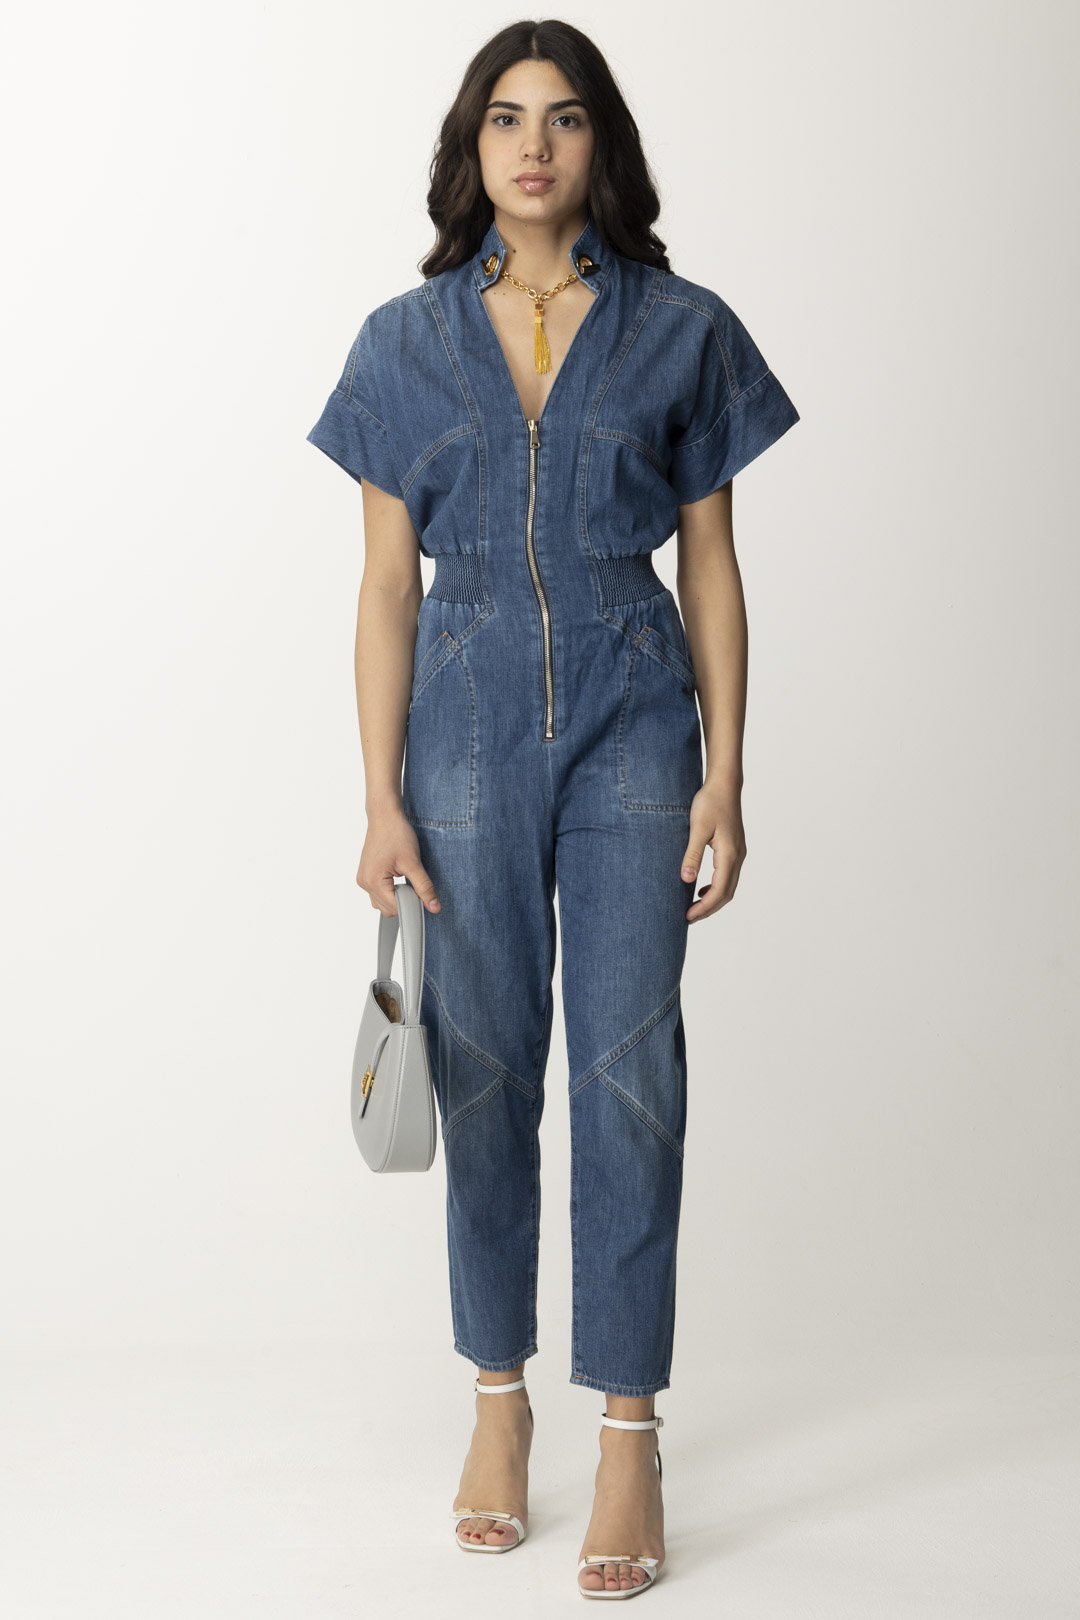 Aperçu: Elisabetta Franchi Combinaison en jean avec collier Blue denim